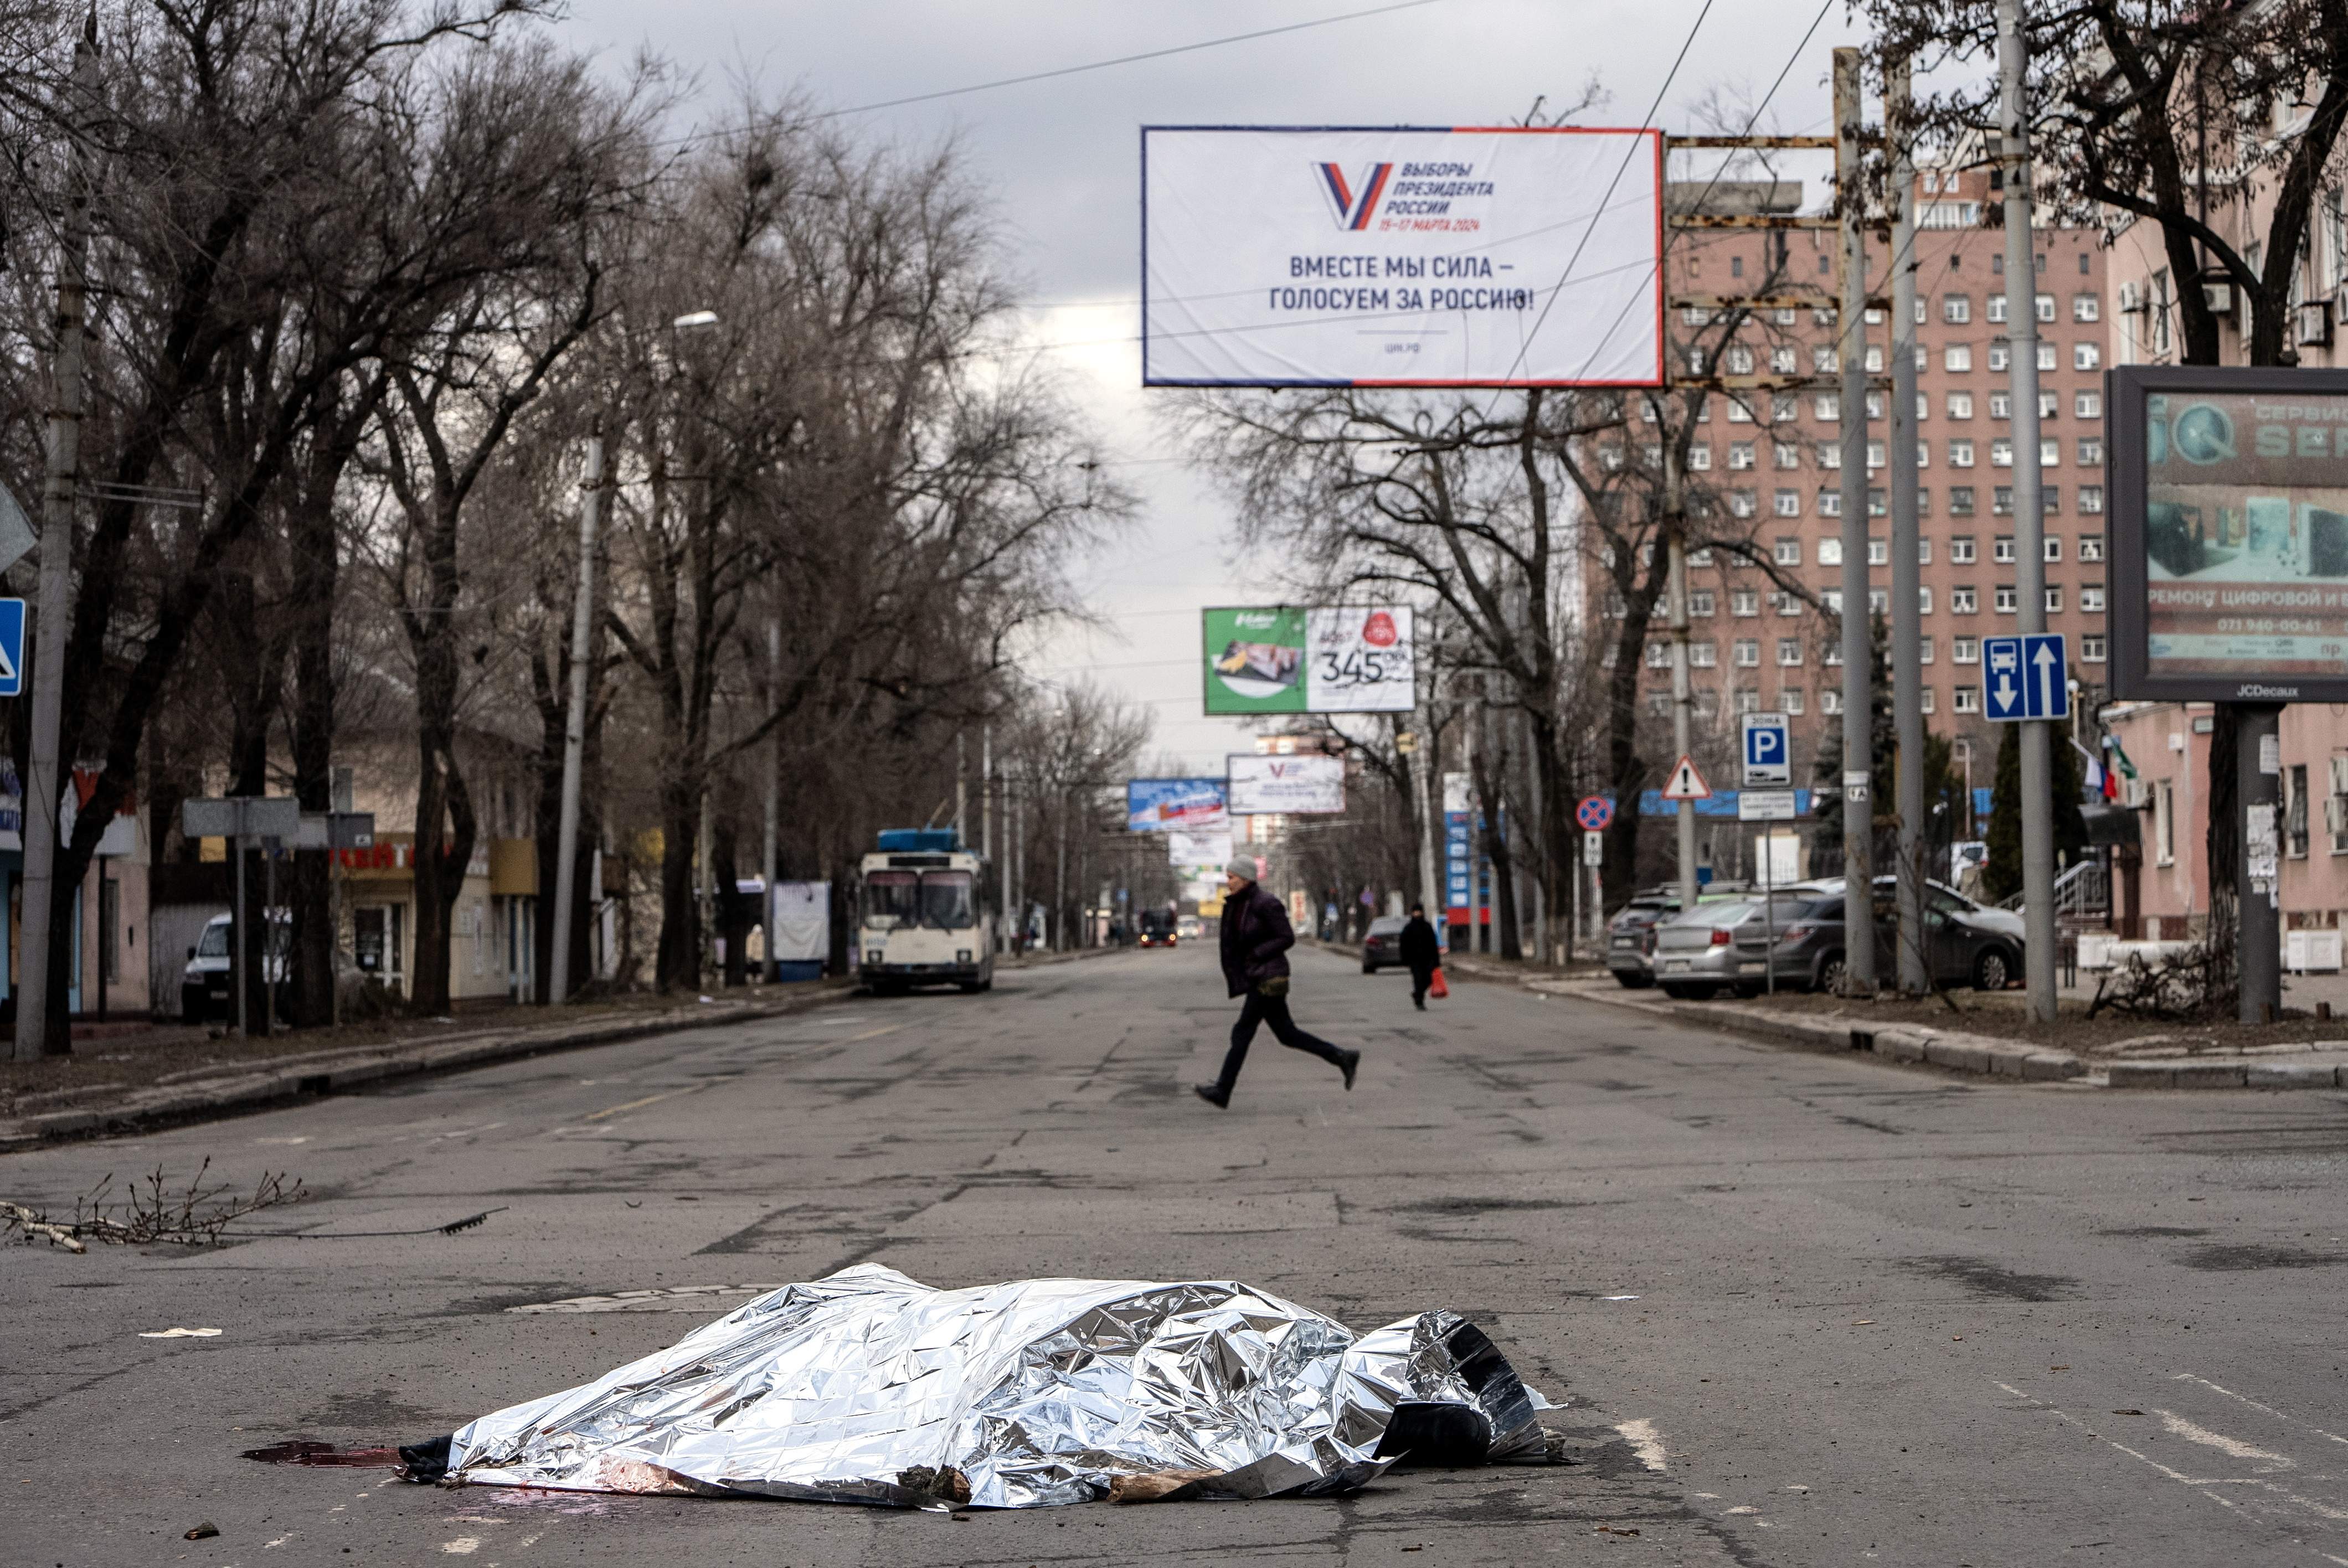 Atrapats, ferits i abandonats: soldats ucraïnesos envien missatges de les últimes hores a Adviivka